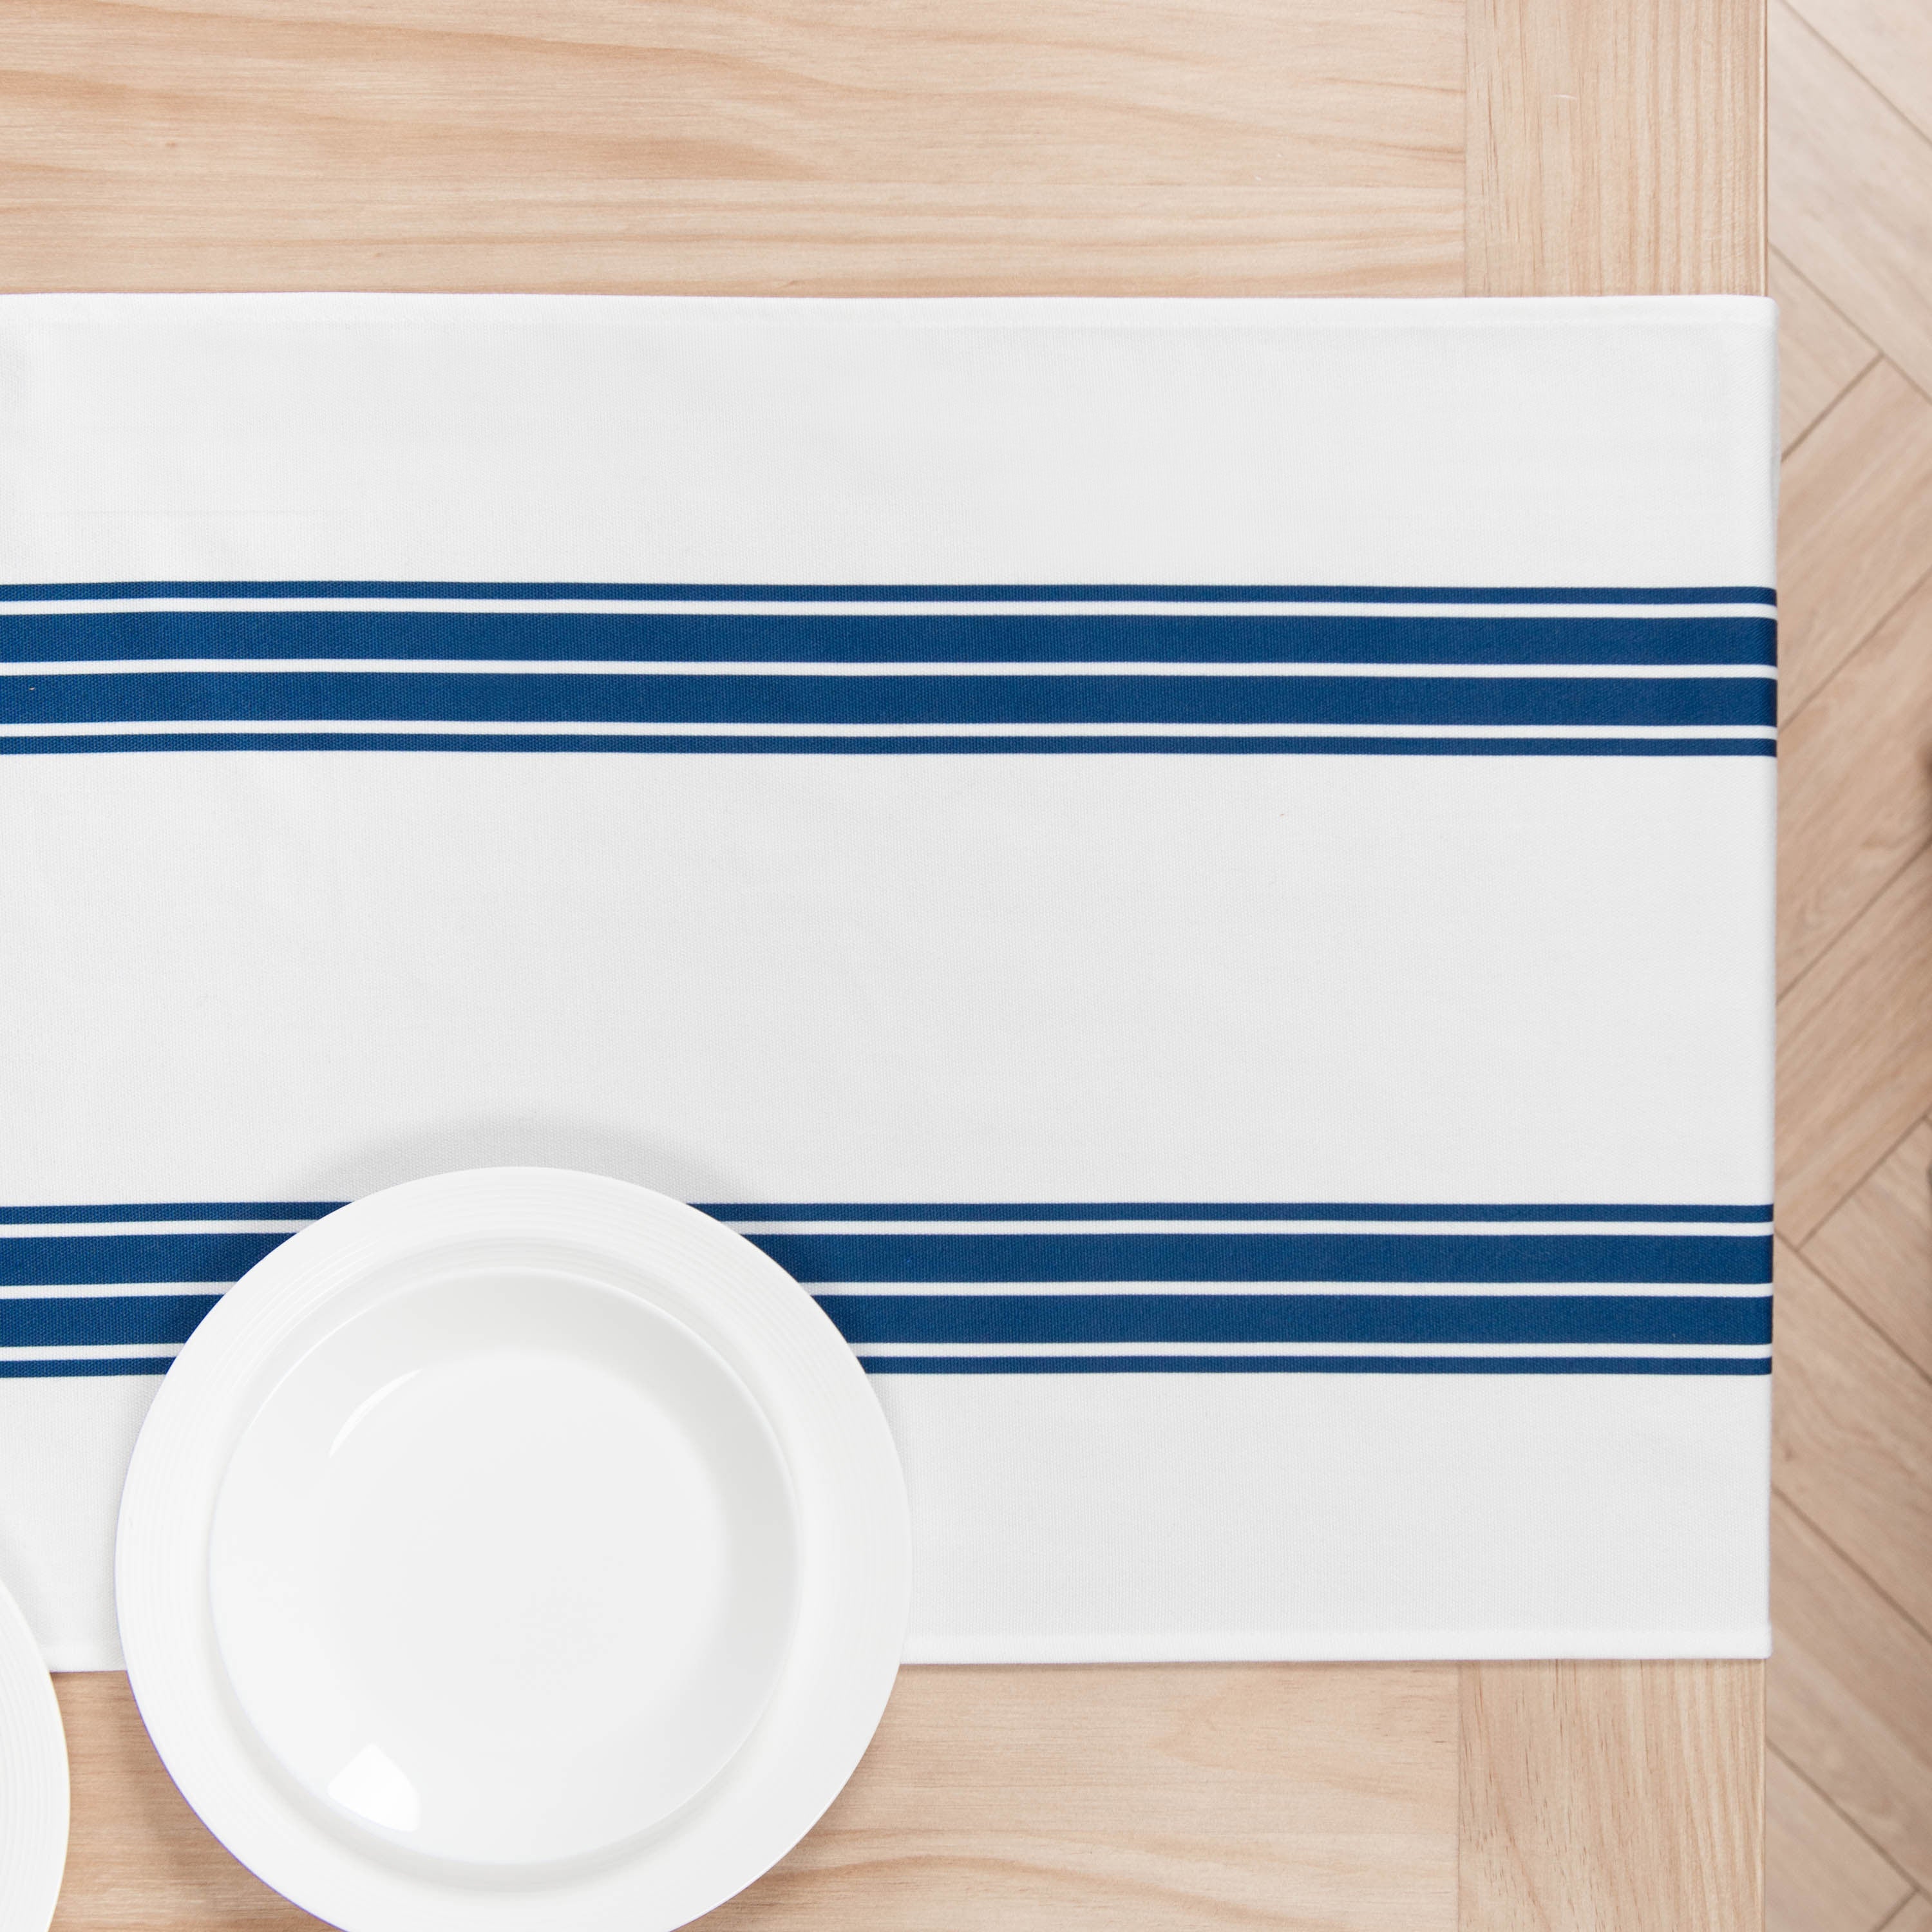 Coastal Table Runner, Aviv Stripe Tassel, Navy Blue, 18"x72"